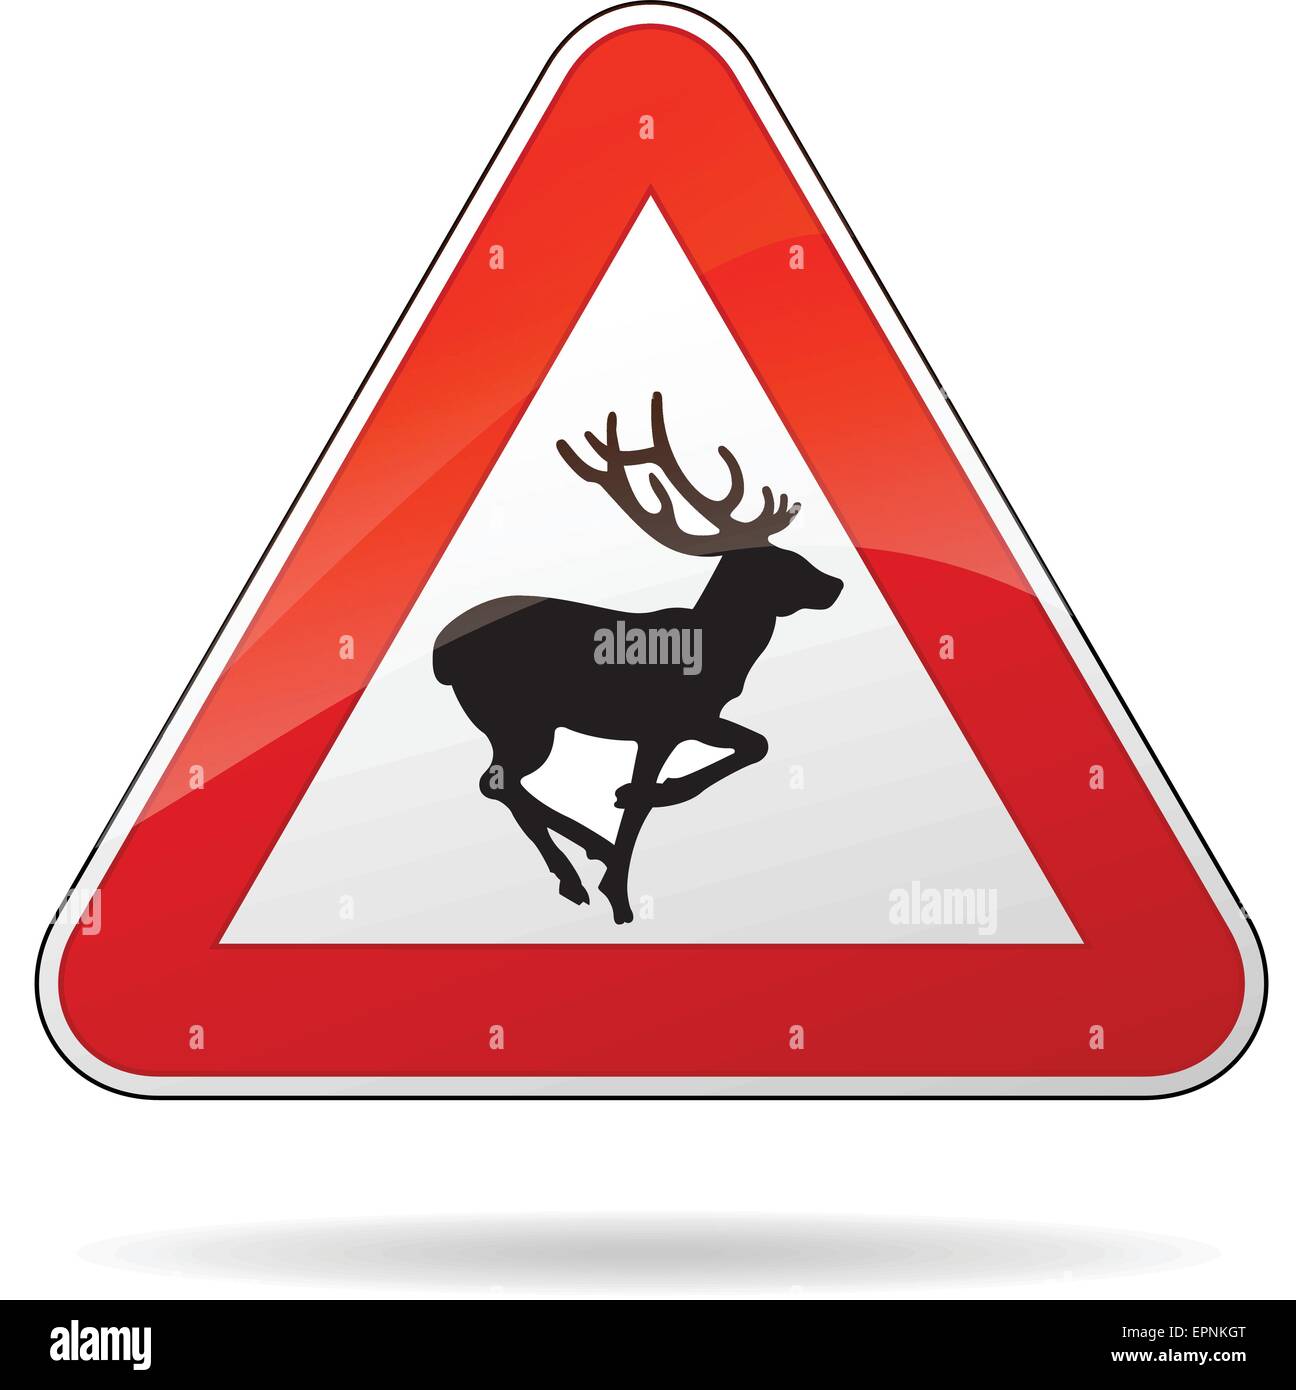 https://c8.alamy.com/comp/EPNKGT/illustration-of-rectangle-warning-sign-for-deer-EPNKGT.jpg